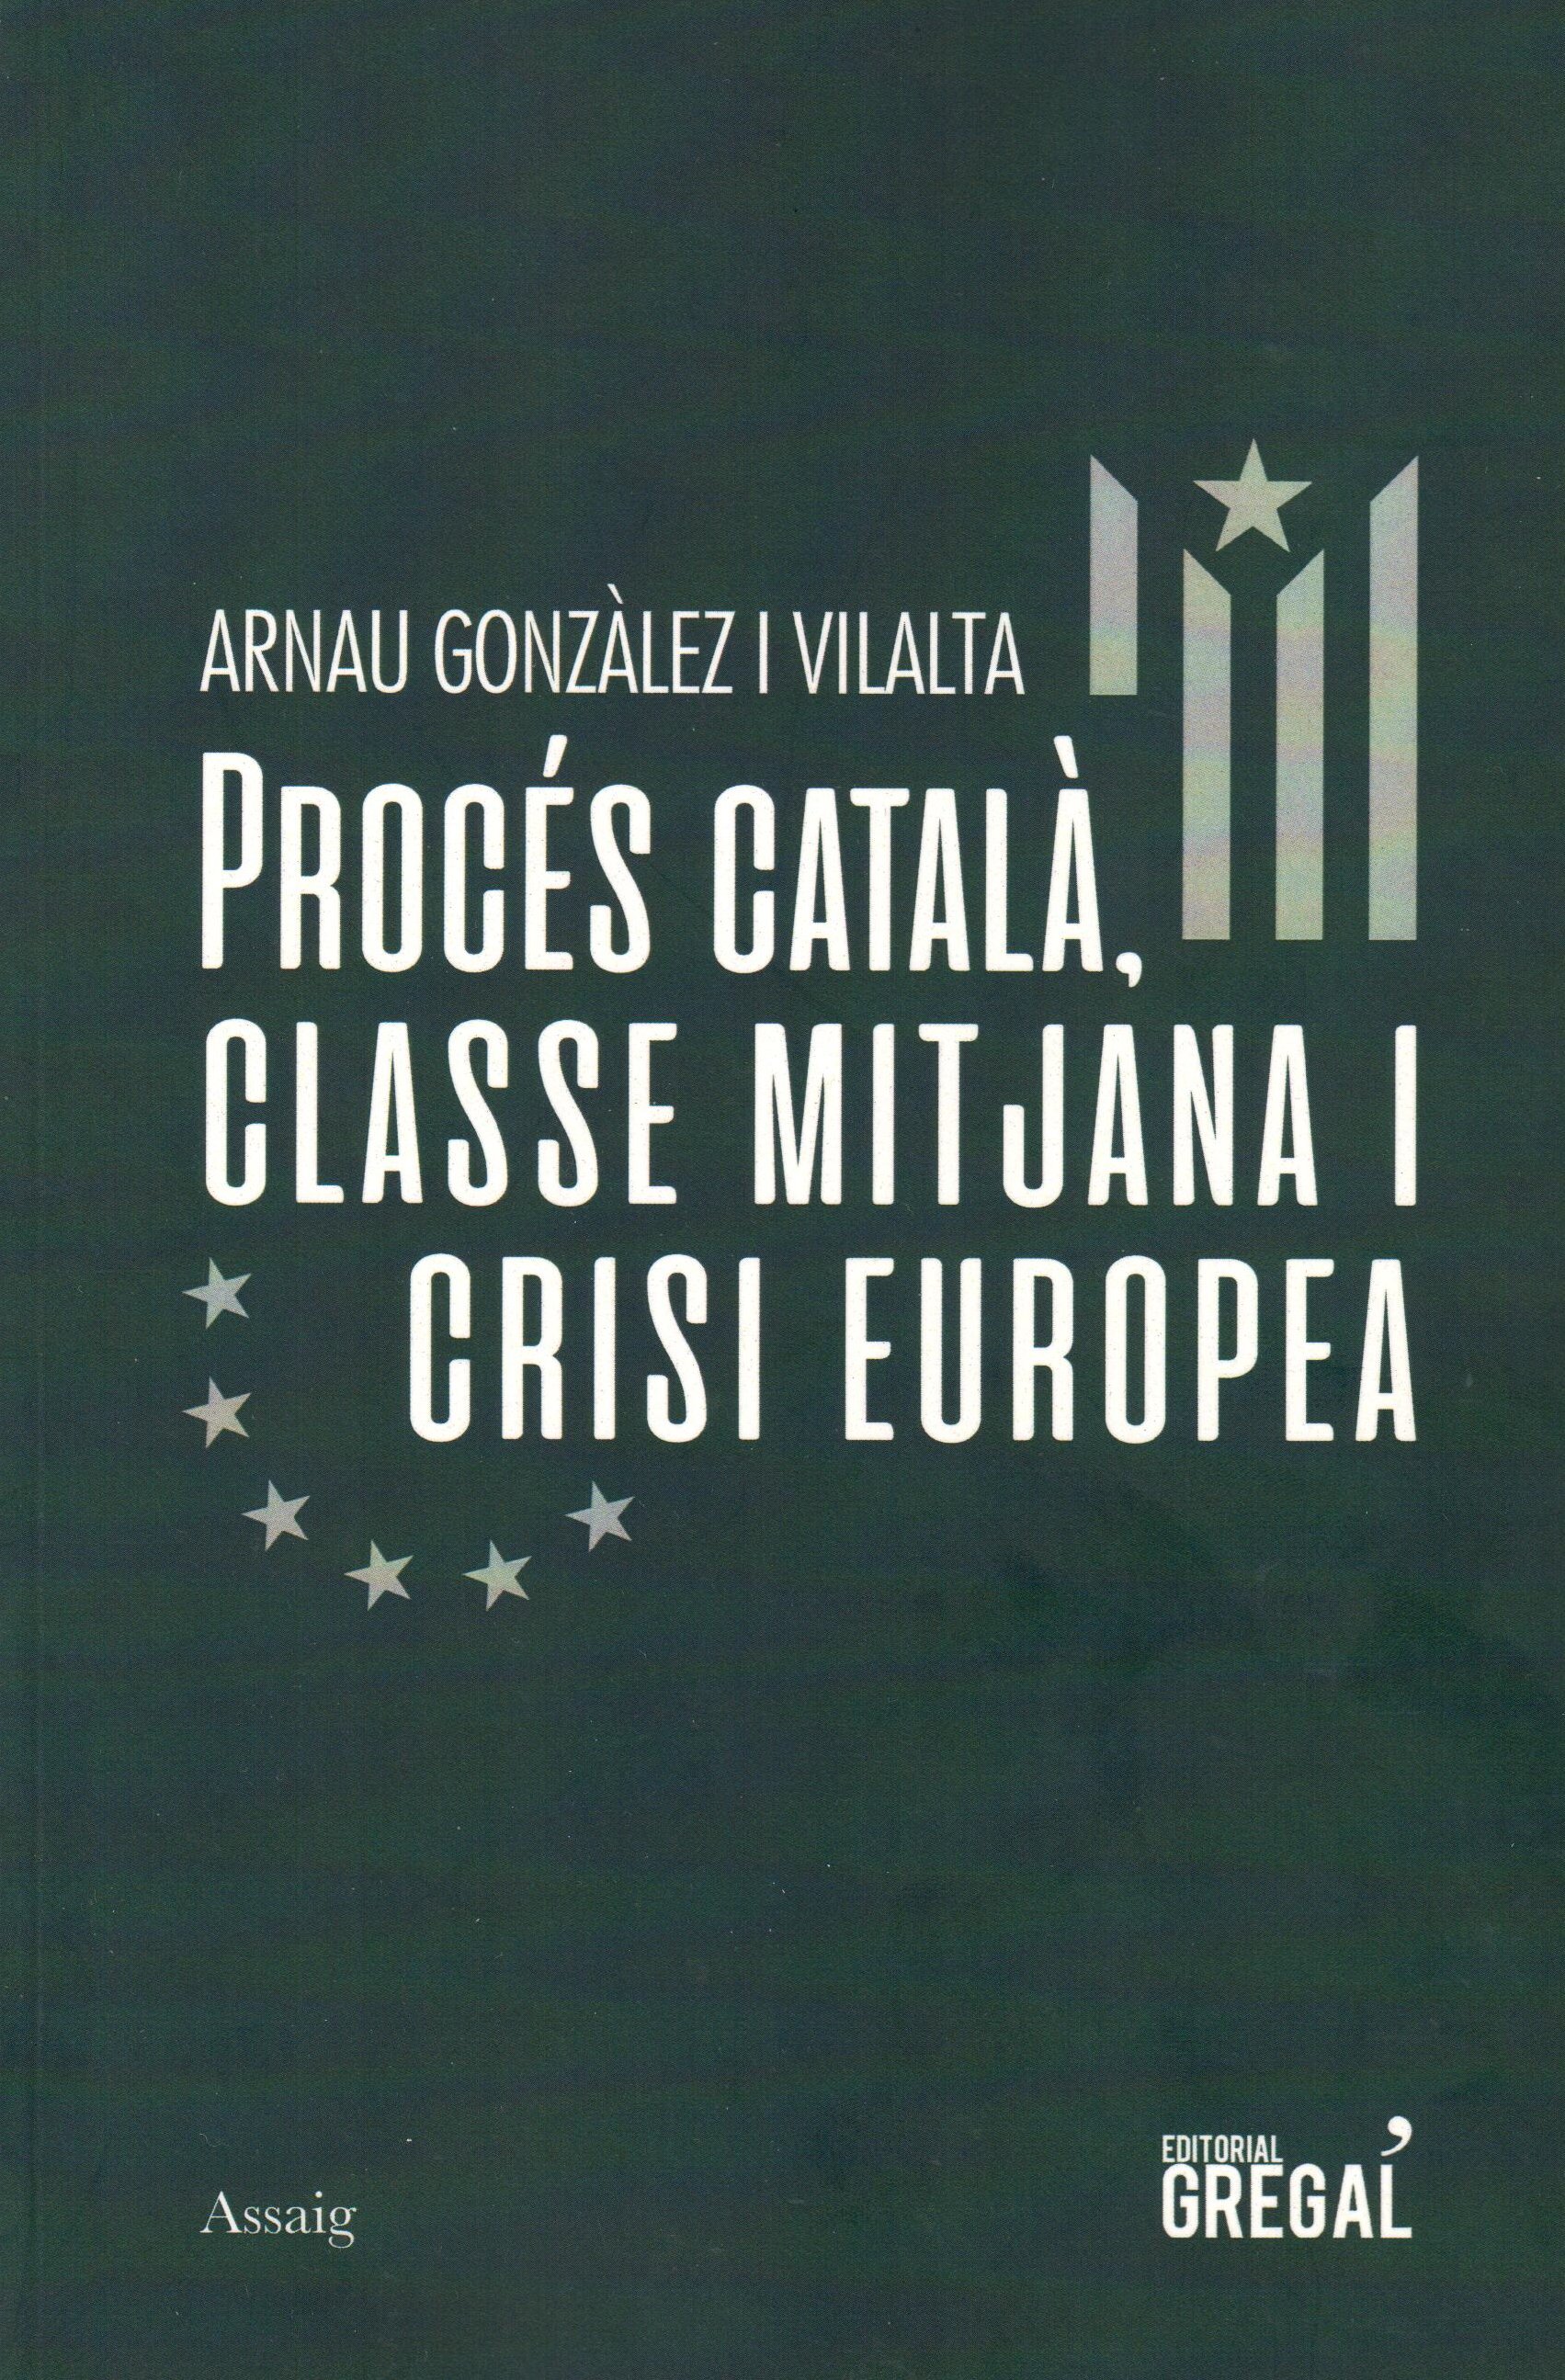 Arnau Gonzàlez i Vilalta, 'Procés català, classe mitjana i crisi europea'. Ed. Gregal 124 pàg., 15 €.